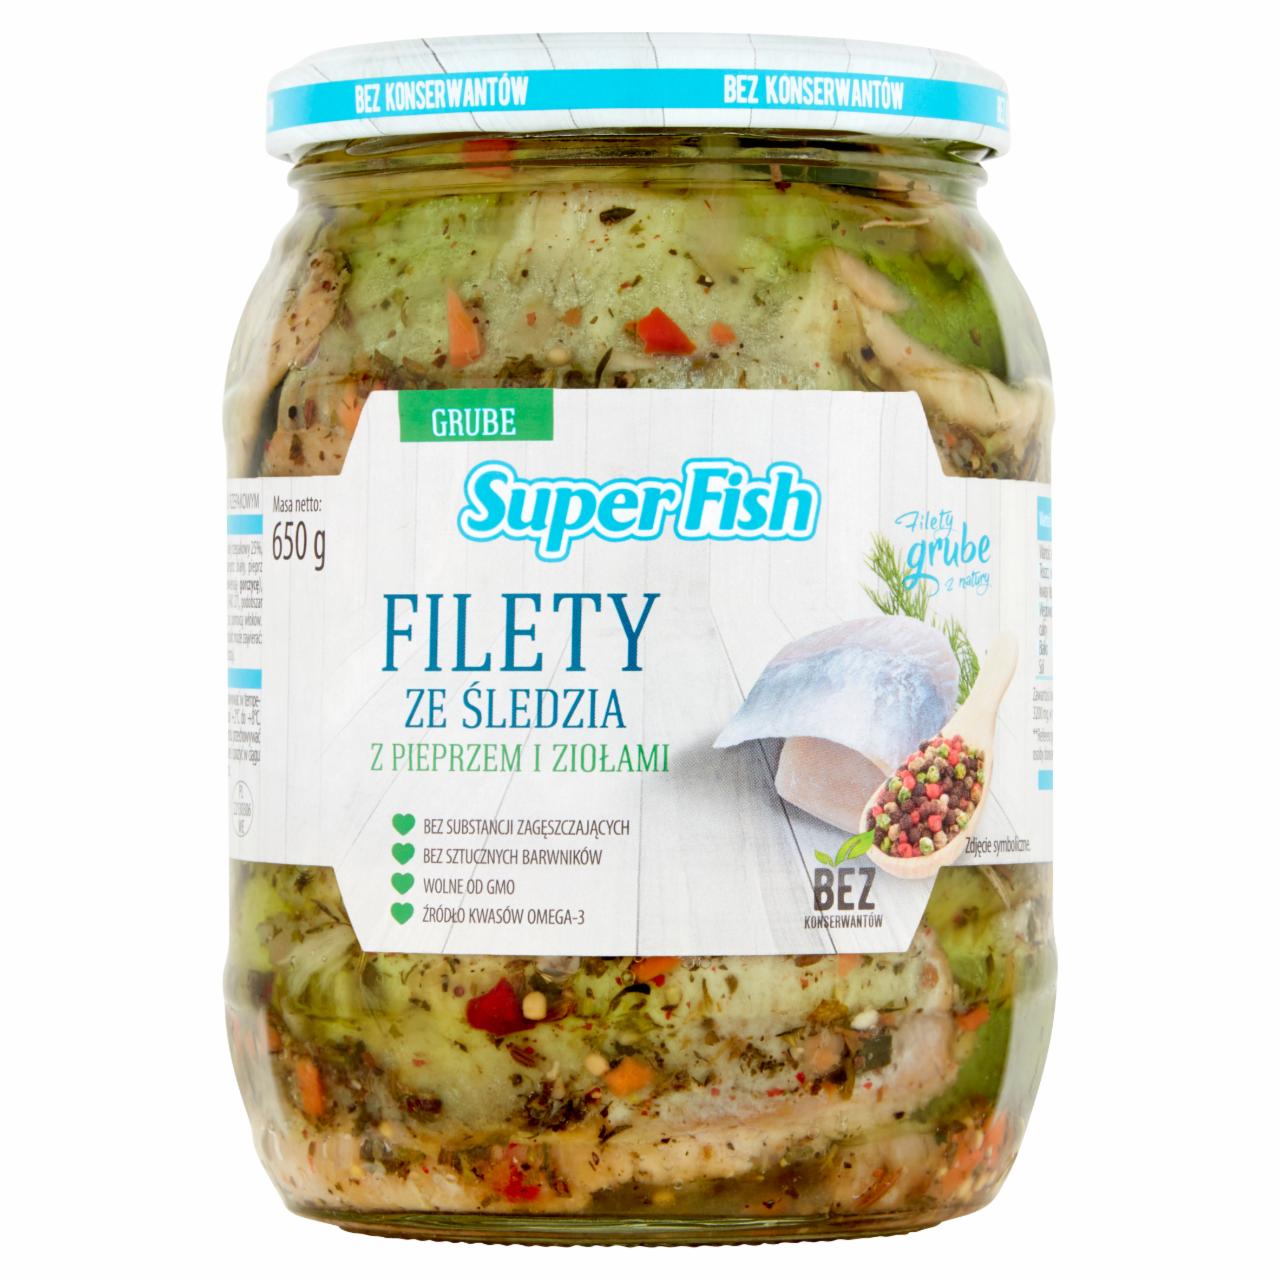 Zdjęcia - SuperFish Filety ze śledzia z pieprzem i ziołami 650 g